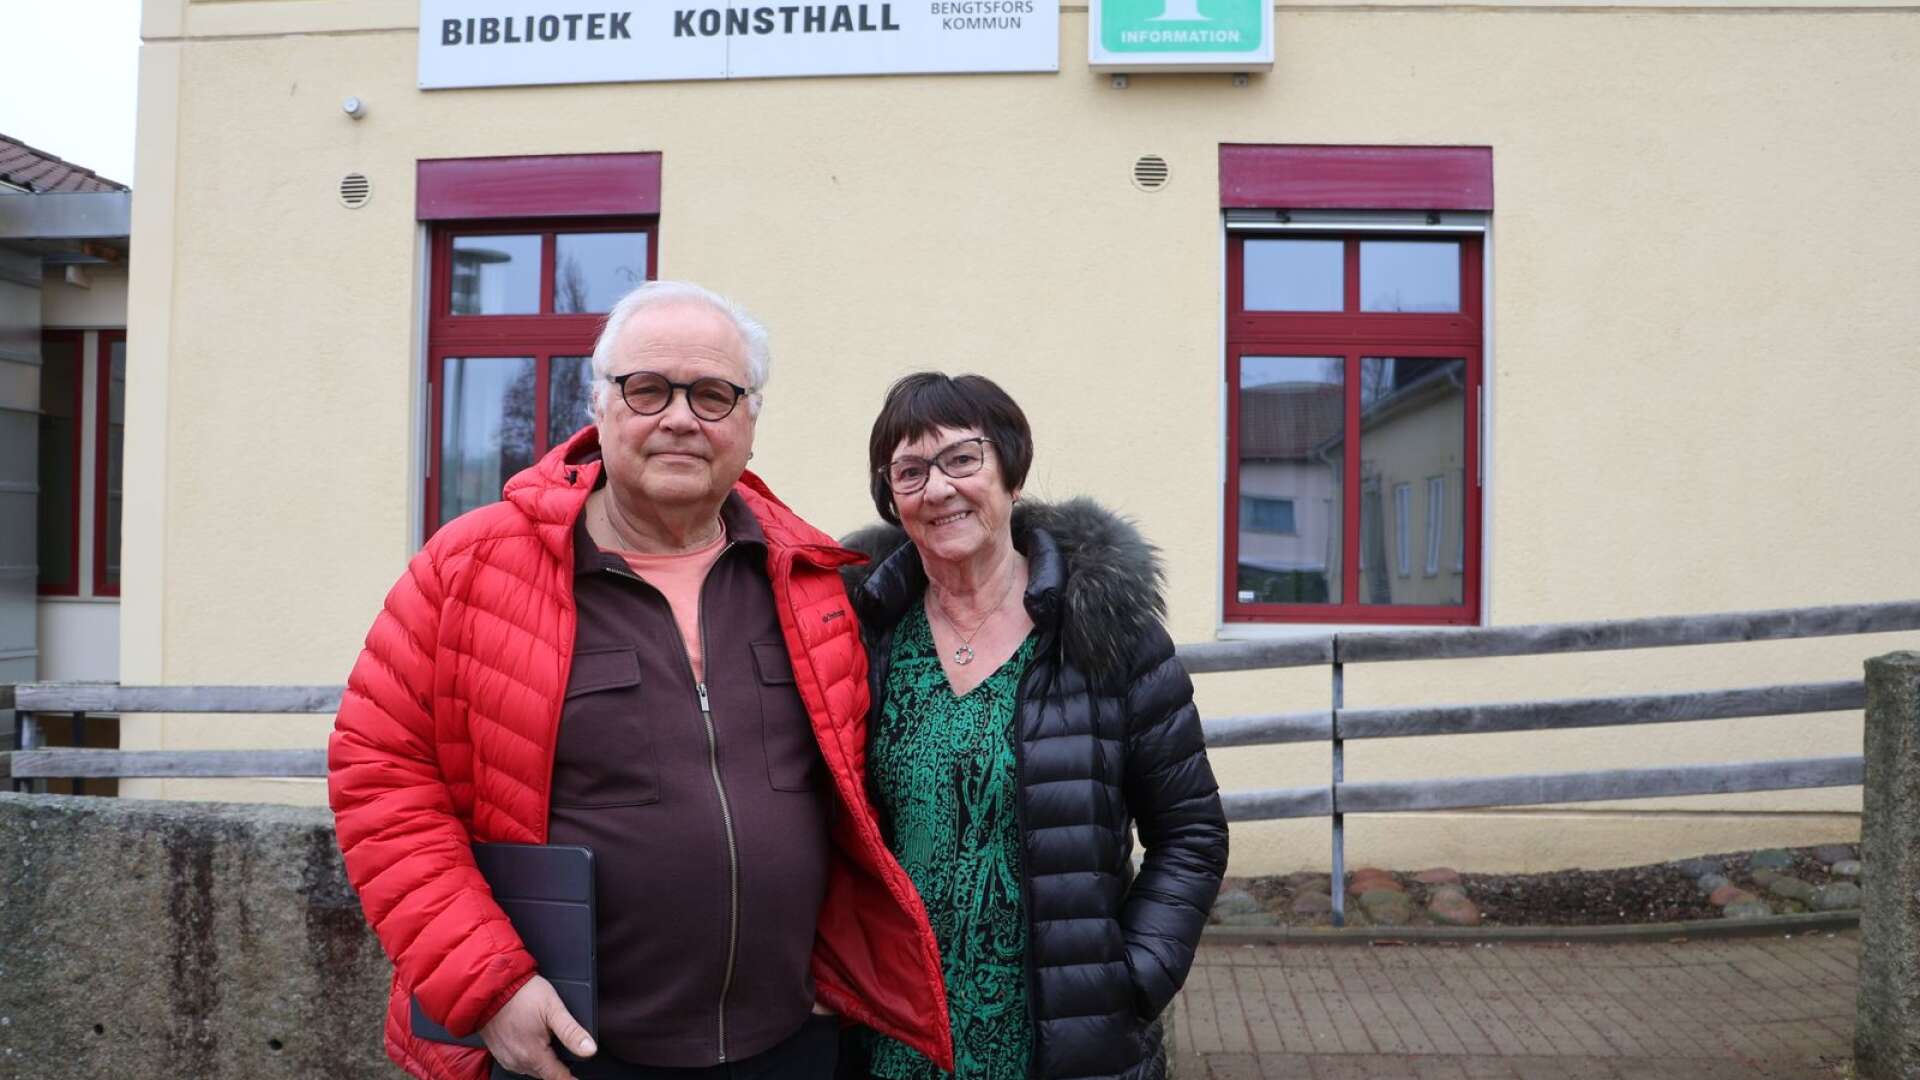 Dag Bjaaland och Kerstin Olsson, tidigare rektorer på Strömkullegymnasiet i Bengtsfors, tycker att det är väldigt sorgligt att skolan inte får en nystart.